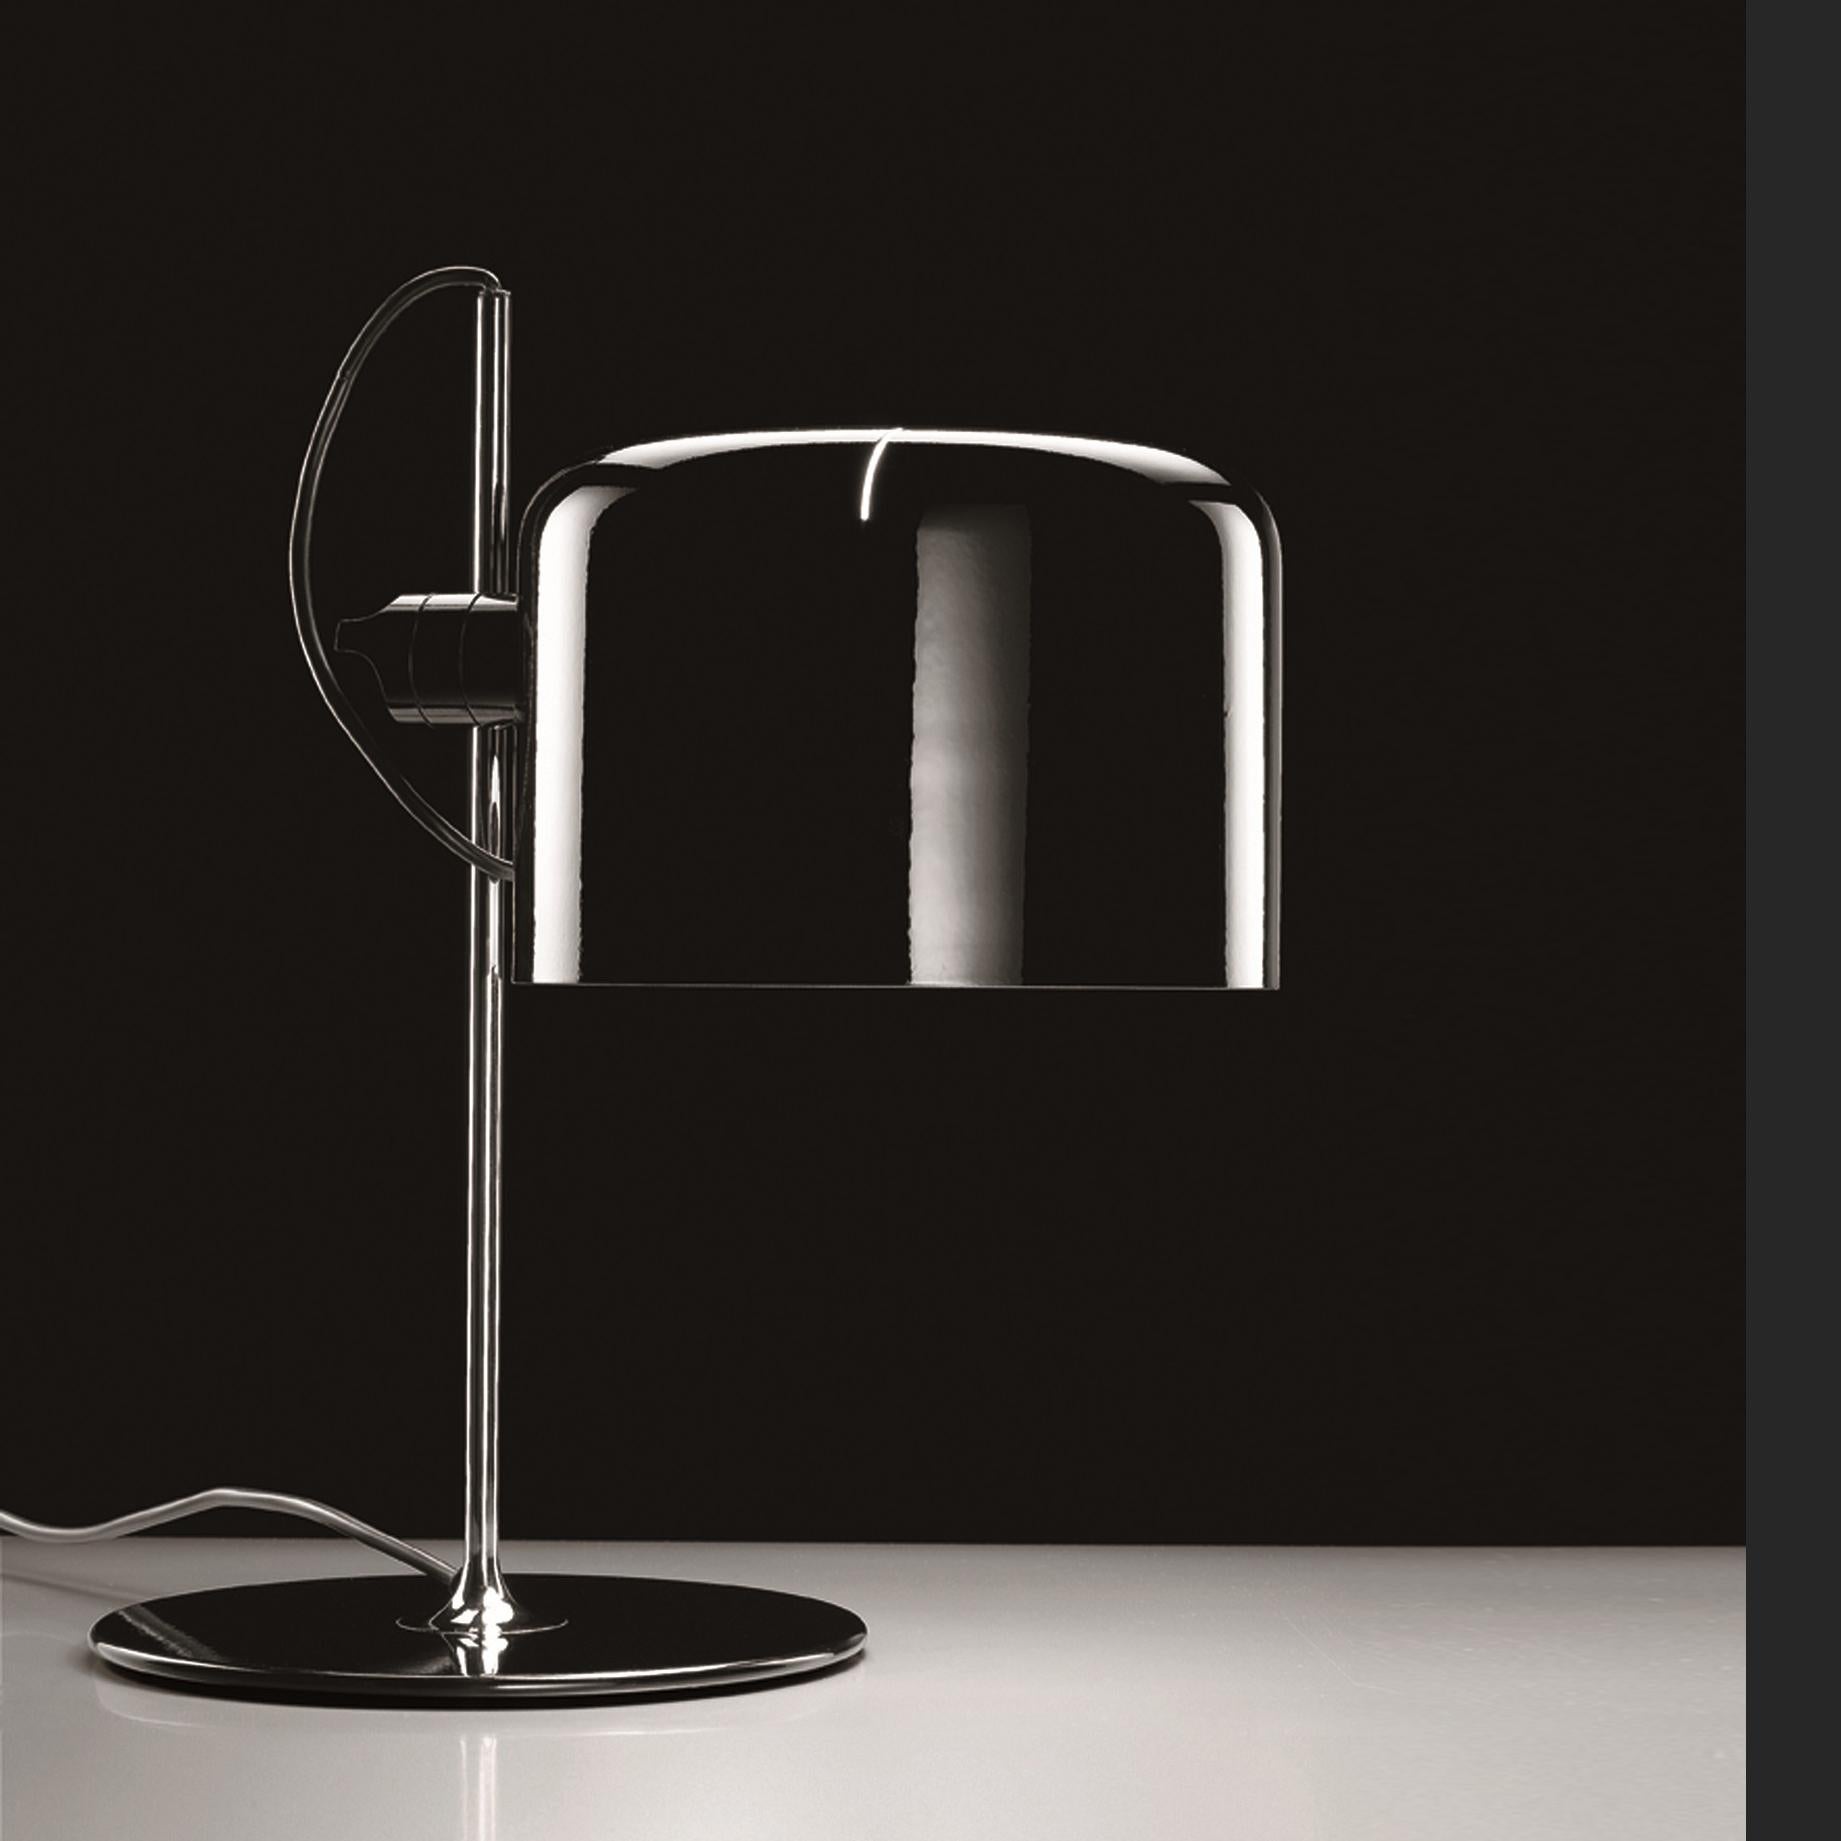 Lampe de table 'Coupé' conçue par Joe Colombo en 1967.
Lampe de table à lumière directe, base en métal laqué, tige chromée, réflecteur réglable en aluminium laqué.
Fabriqué par Oluce, Italie.

La série Coupé, dessinée par Joe Colombo, a été